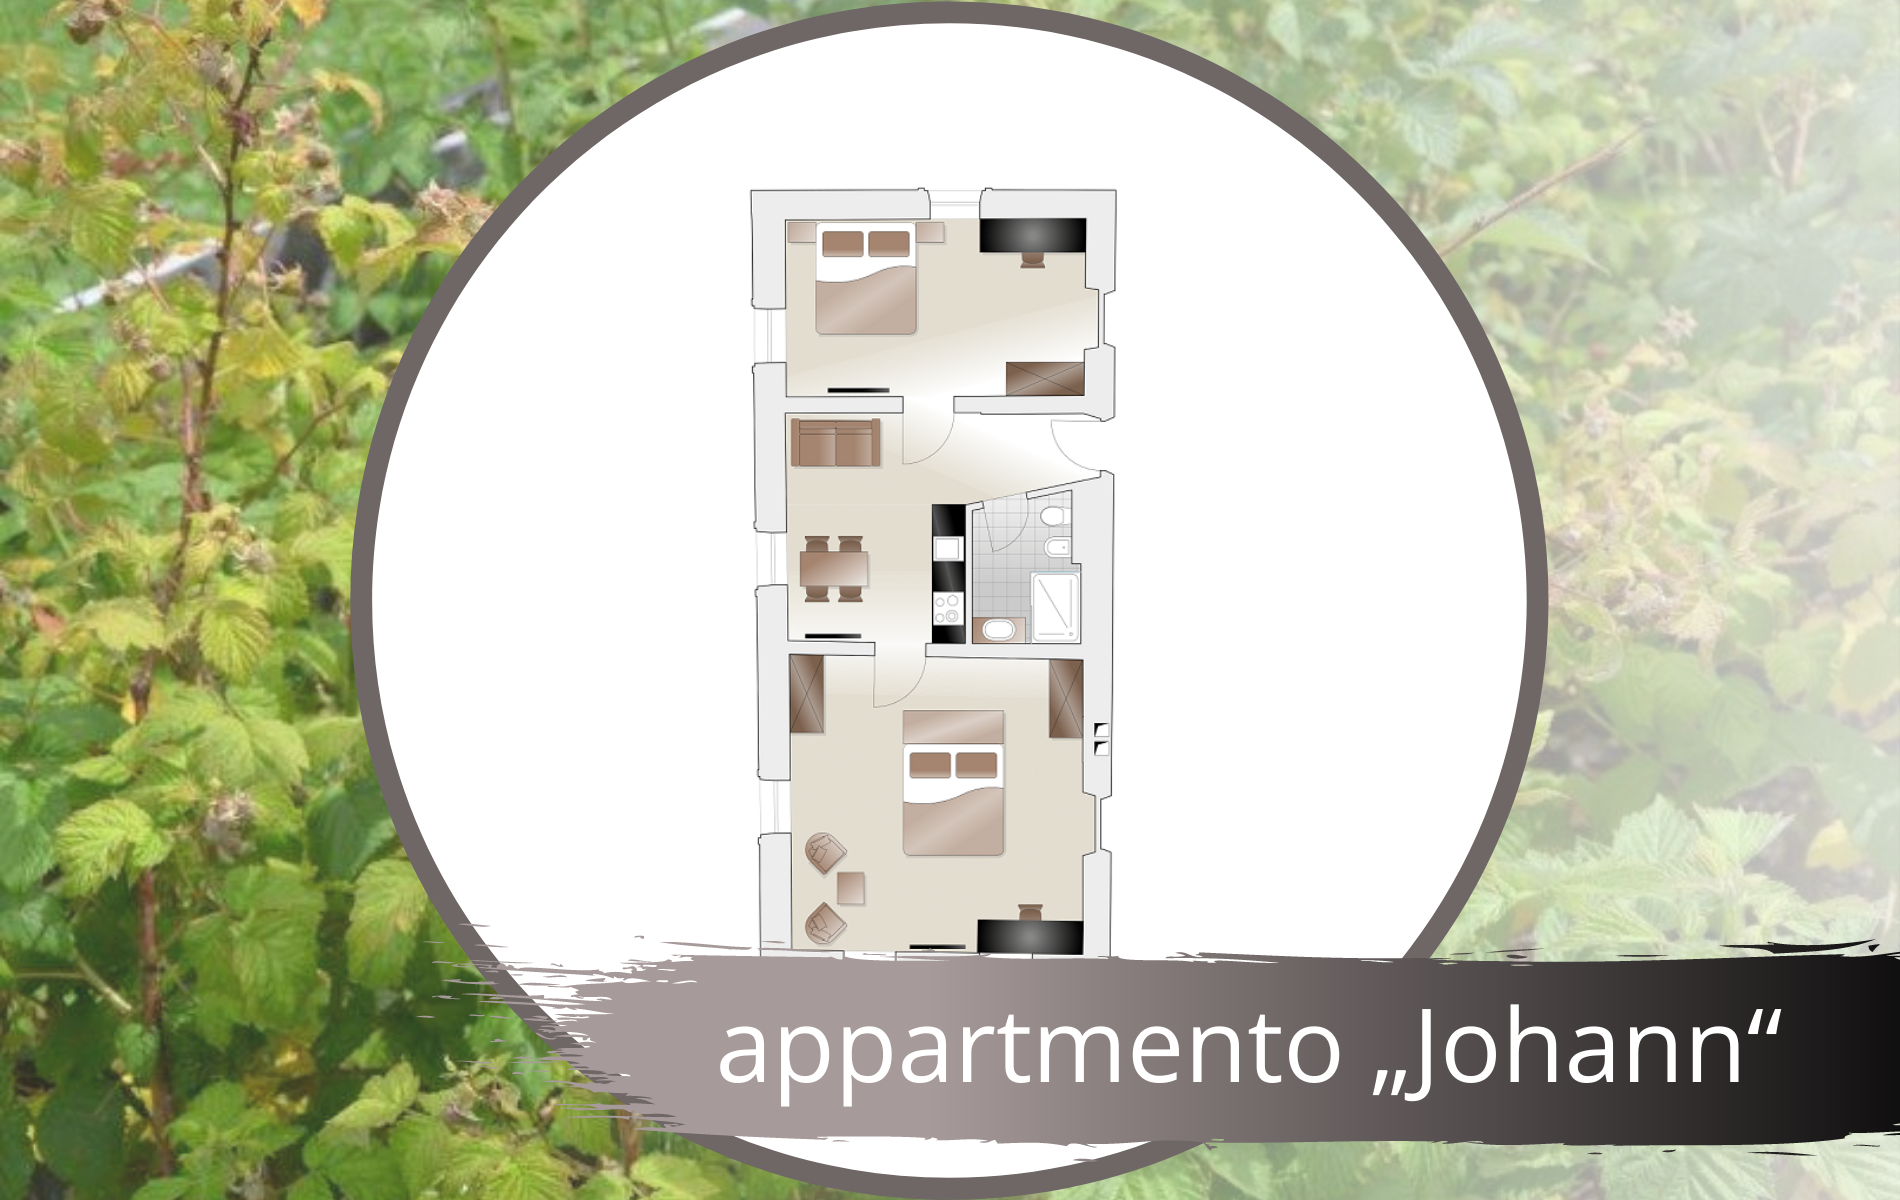 Apartment „Johann“ it